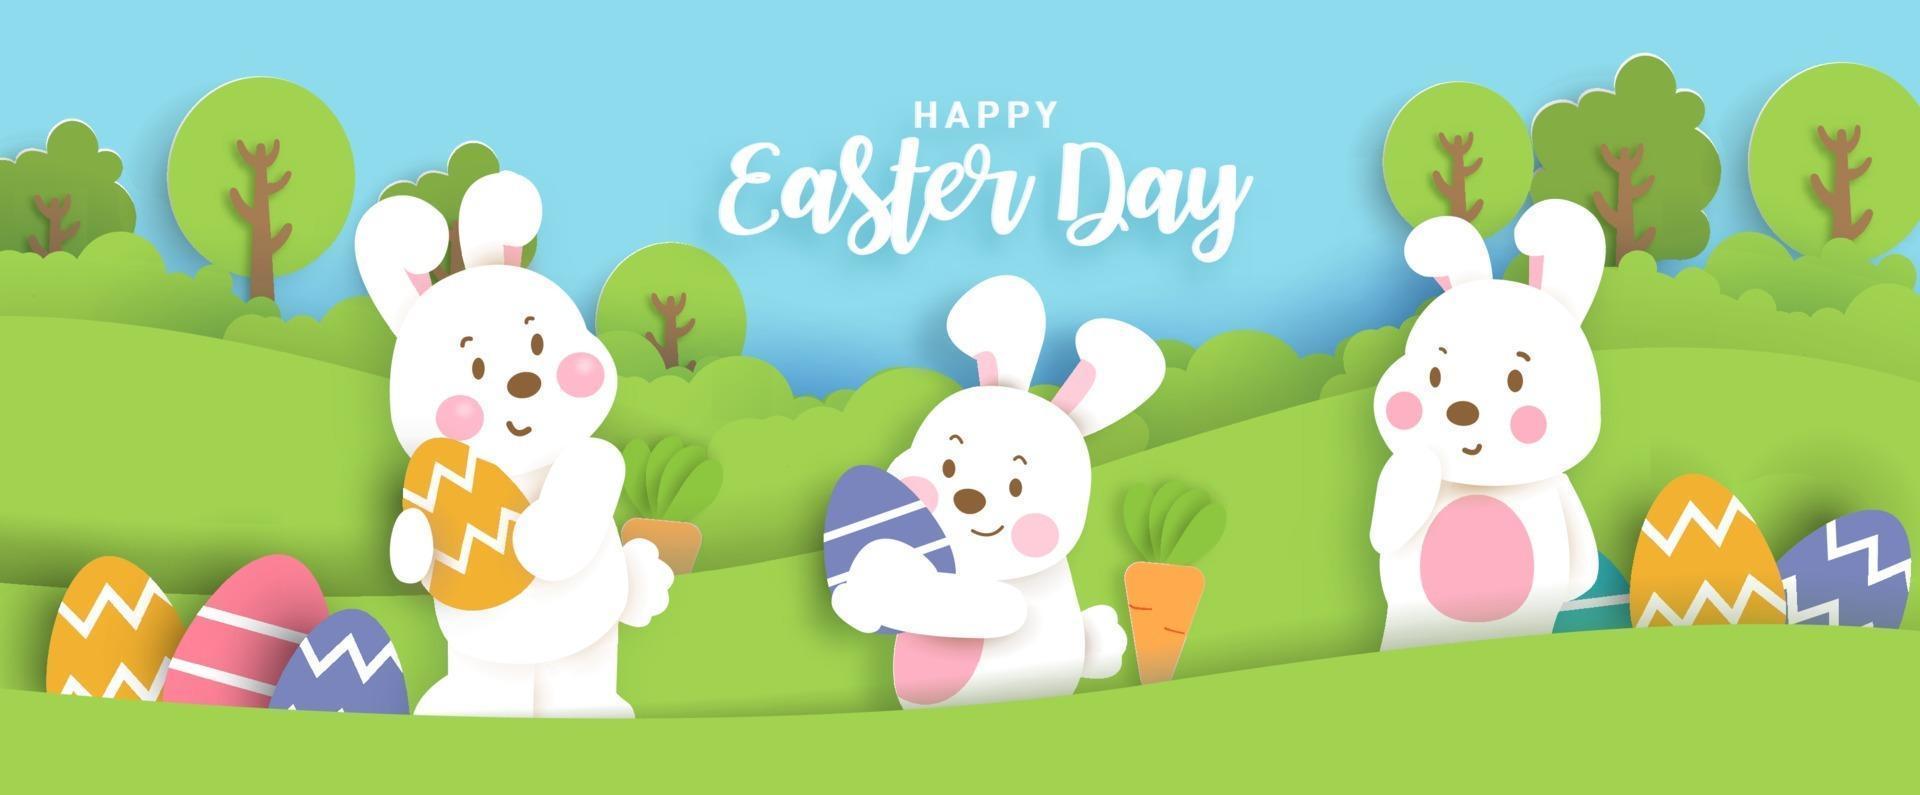 cartão de dia de Páscoa com coelhos bonitos e ovos de Páscoa. vetor